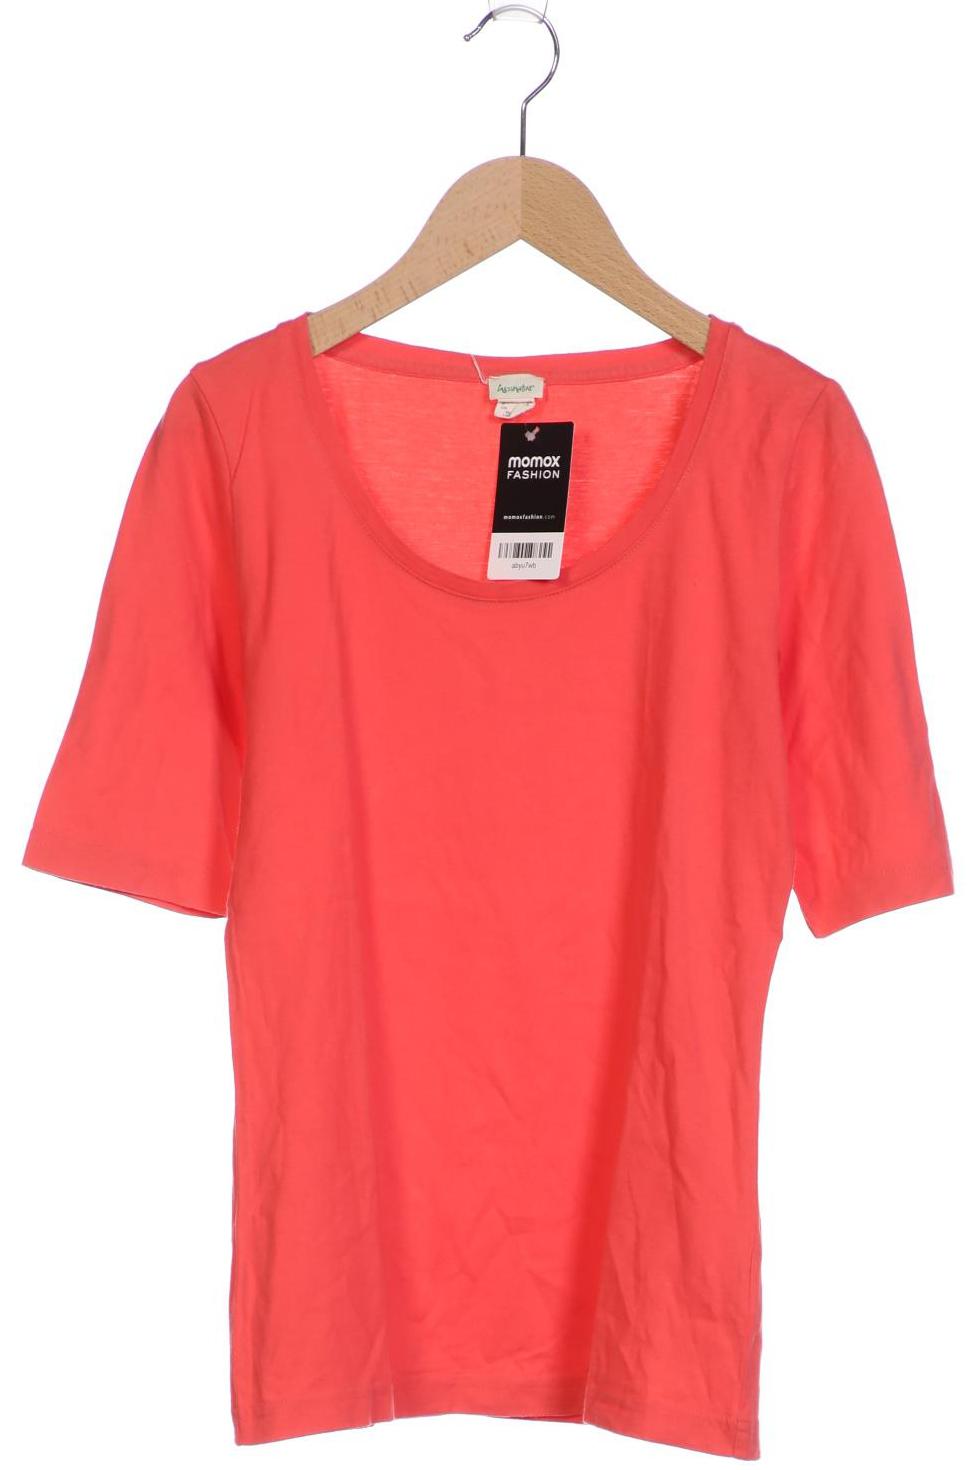 hessnatur Damen T-Shirt, rot, Gr. 34 von hessnatur